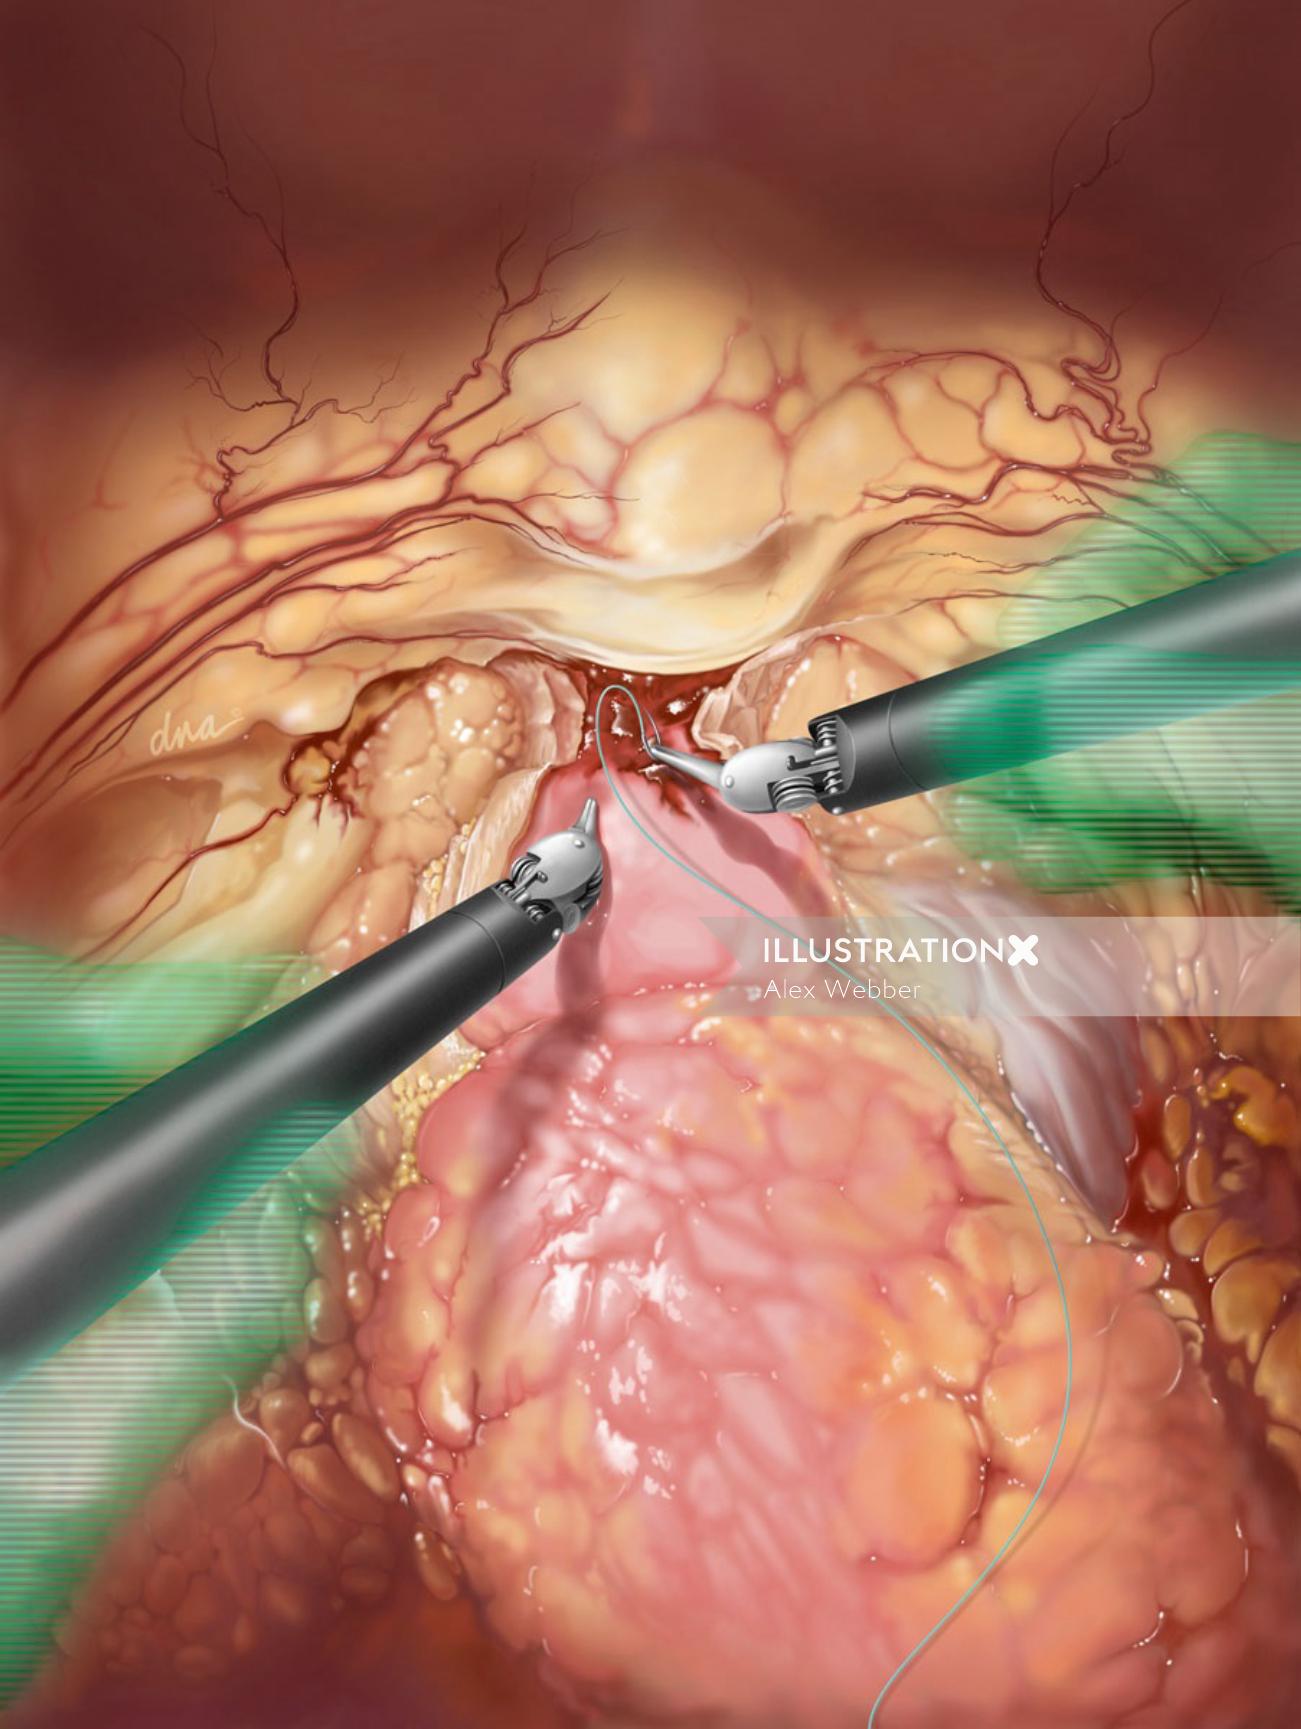 Illustration de chirurgie de prostatectomie par AlexBaker